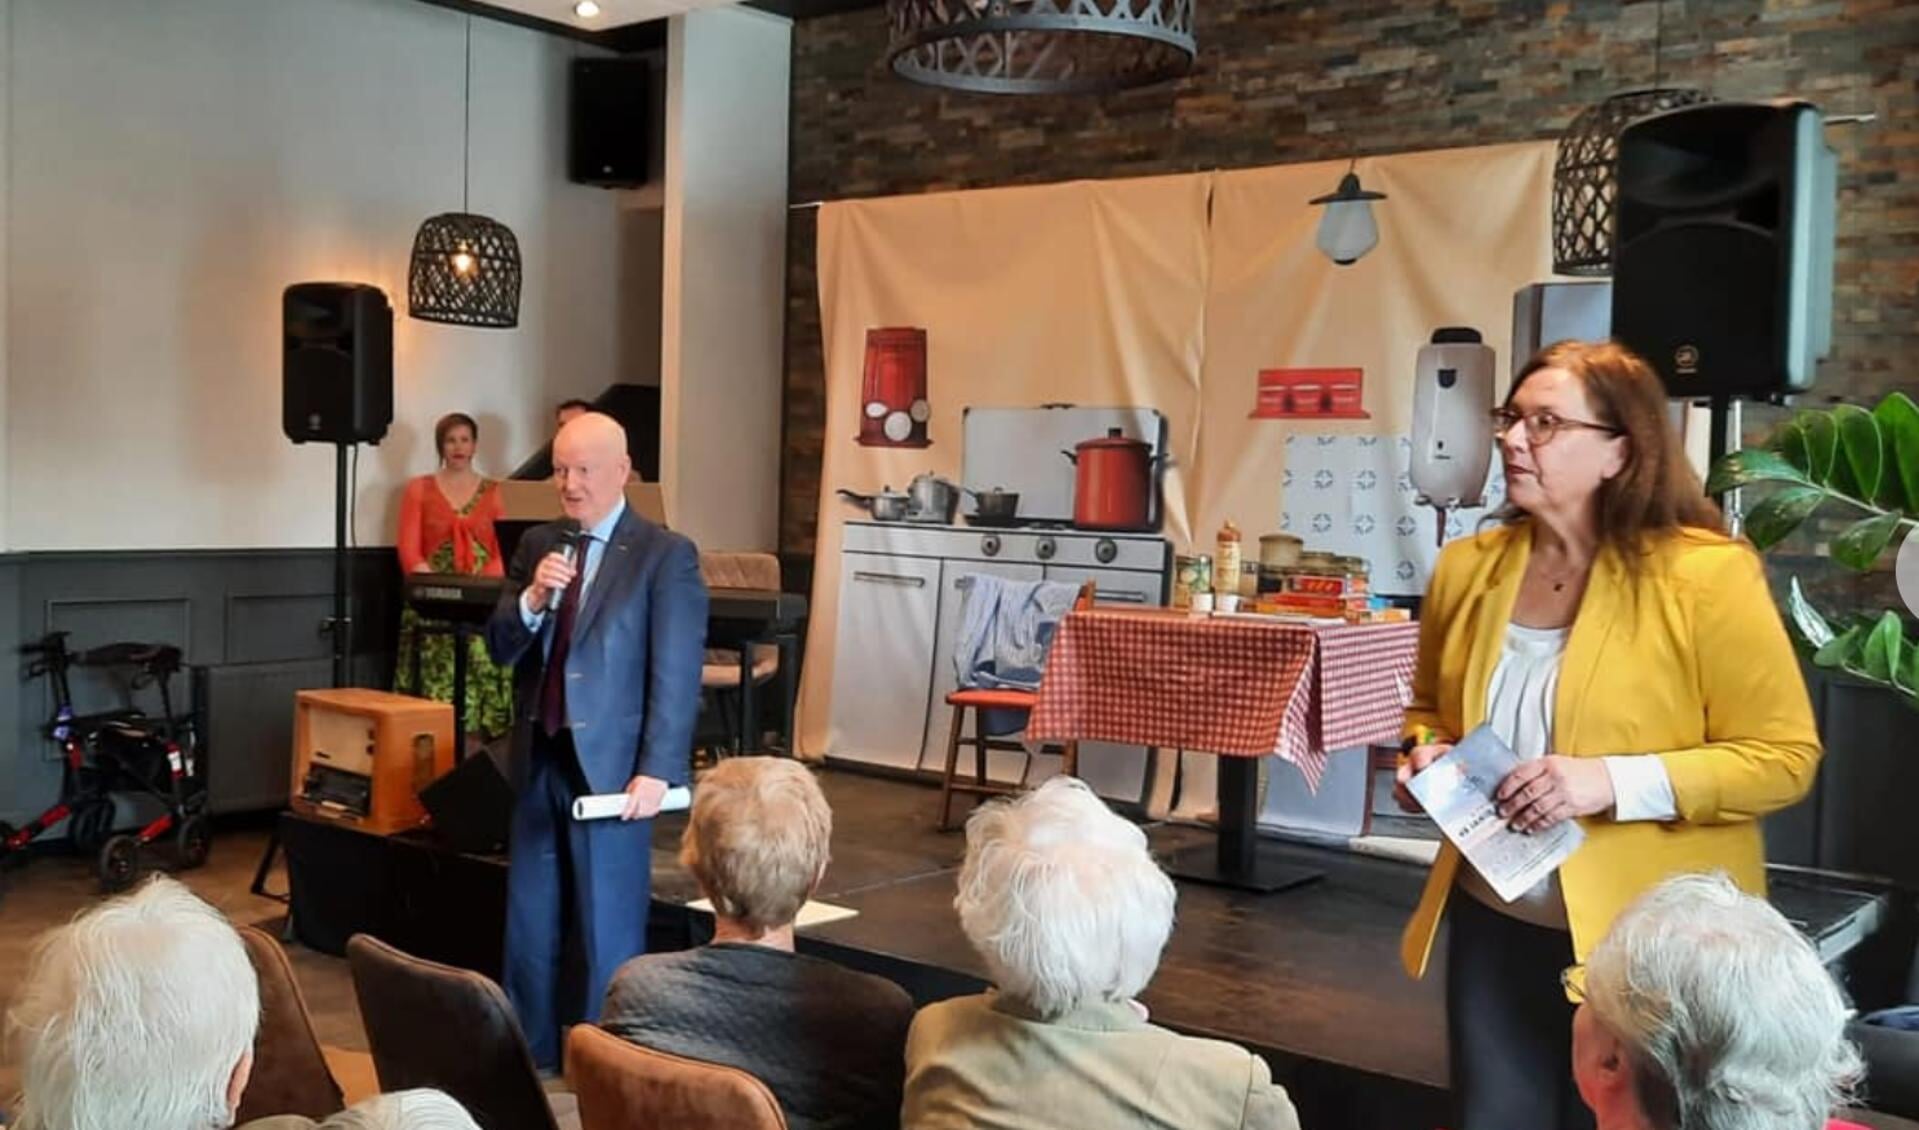 Burgemeester van Bennekom opent de feestelijke bijeenkomst van de Zonnebloem Werkhoven ter gelegenheid van het 45-jarig bestaan.